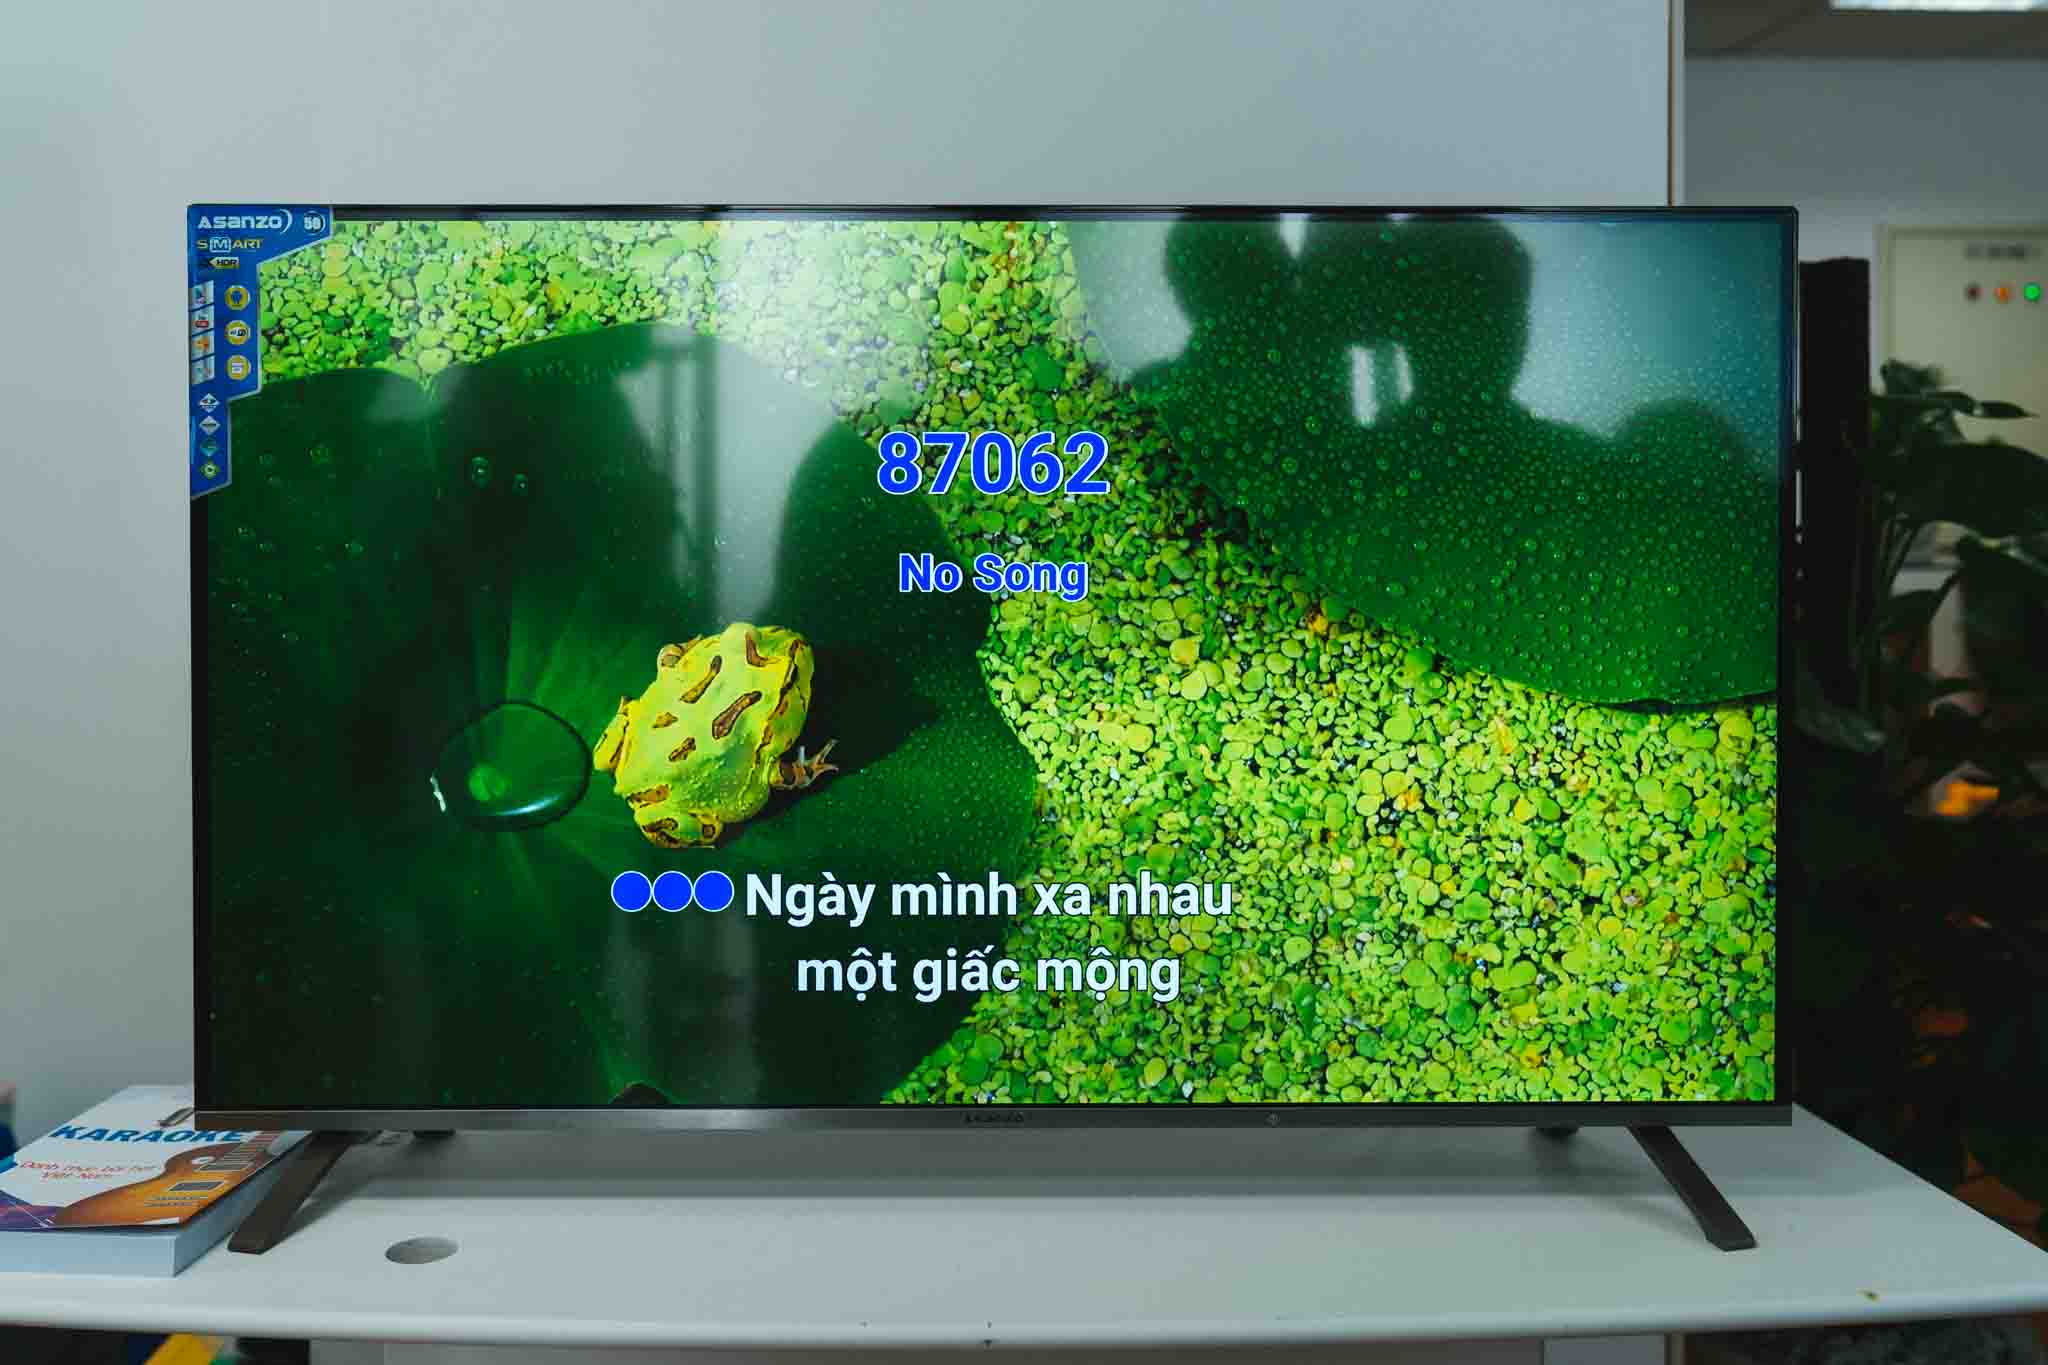 Asanzo ra mắt dòng bộ đôi TV AS50U8 và AS55K8: 4K HDR, Android, có ứng dụng karaoke, giá từ 13 triệu